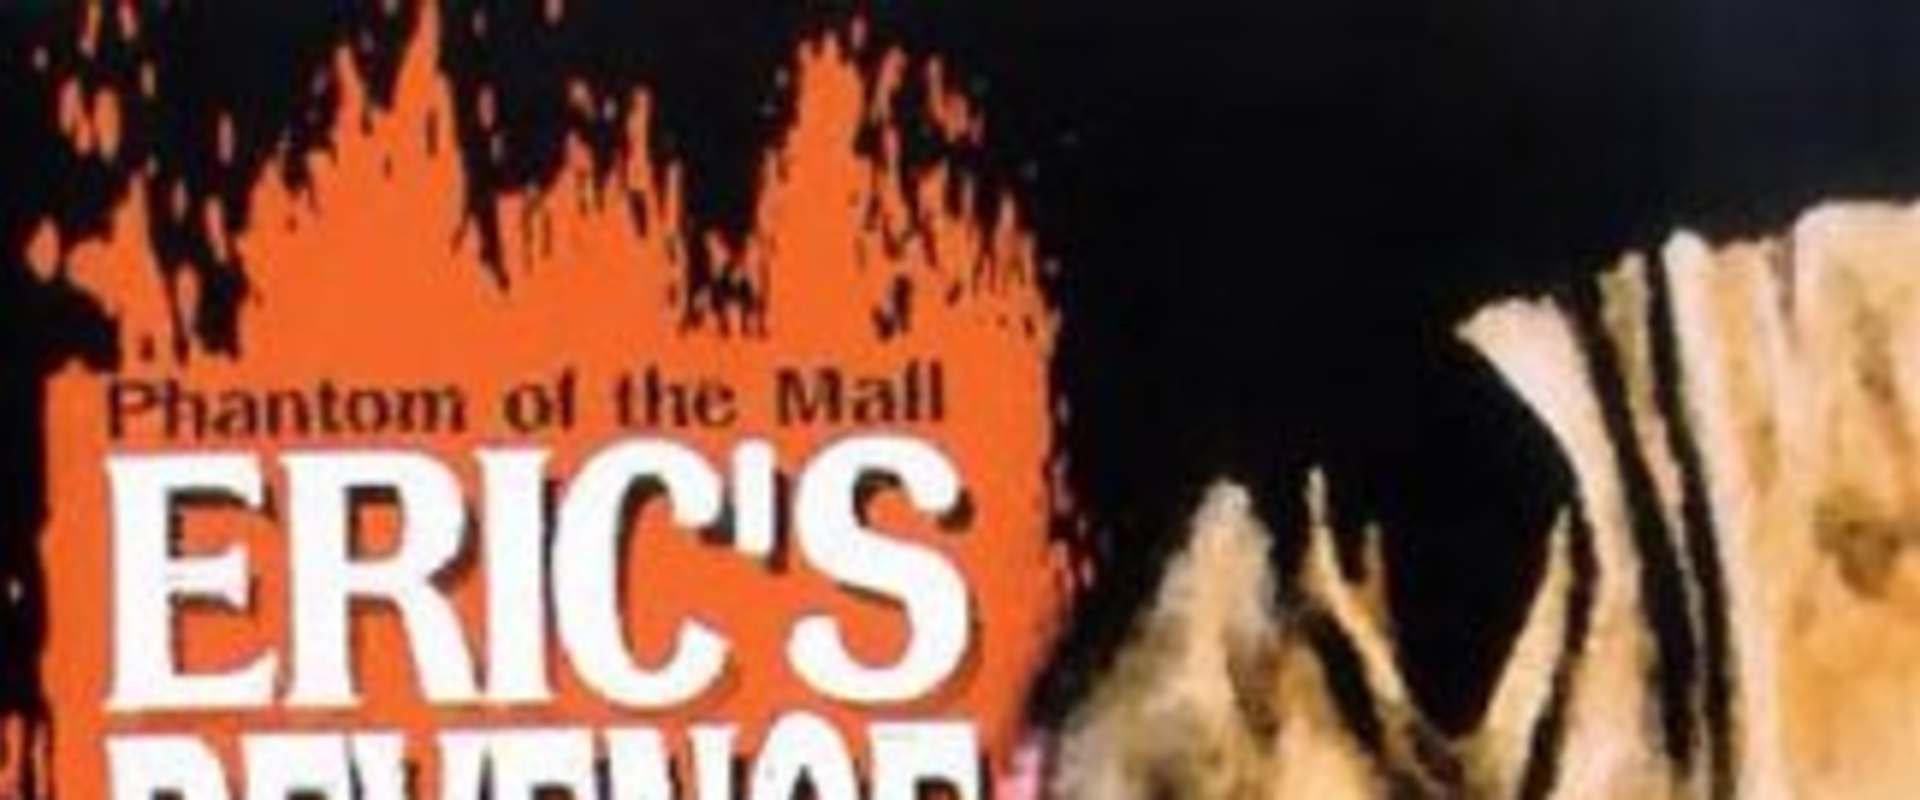 Phantom of the Mall: Eric's Revenge background 1